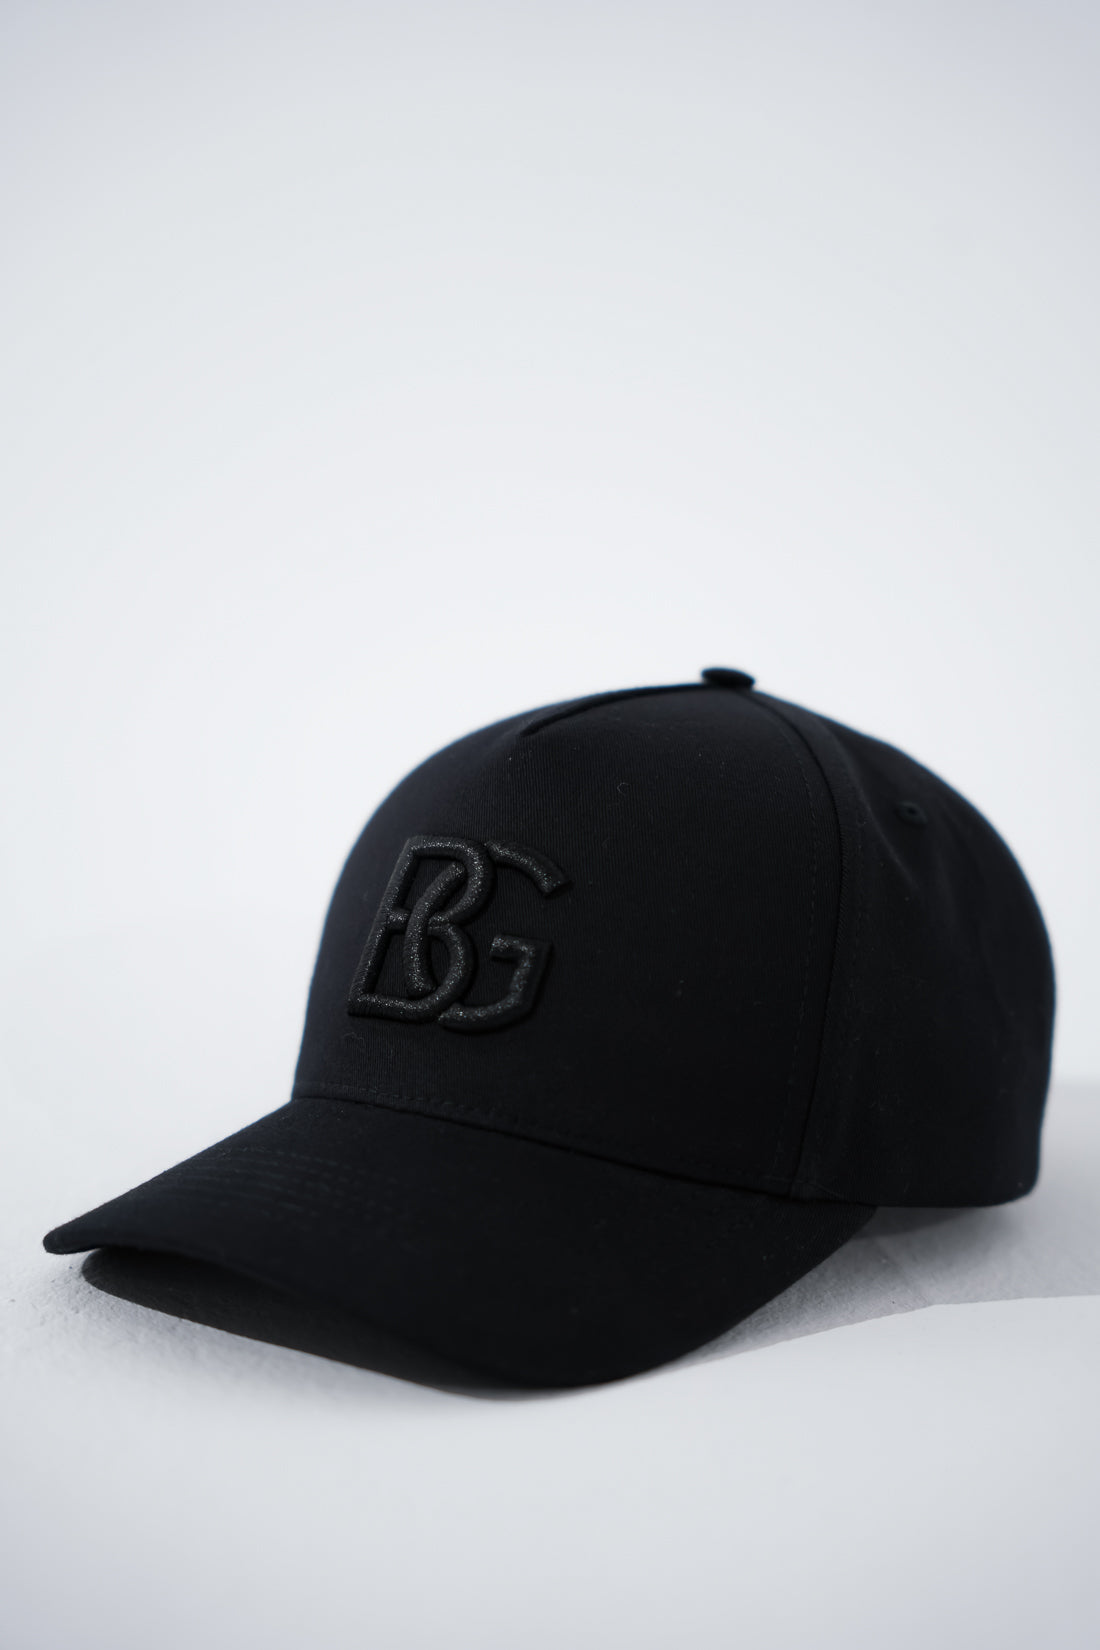 BG Cap